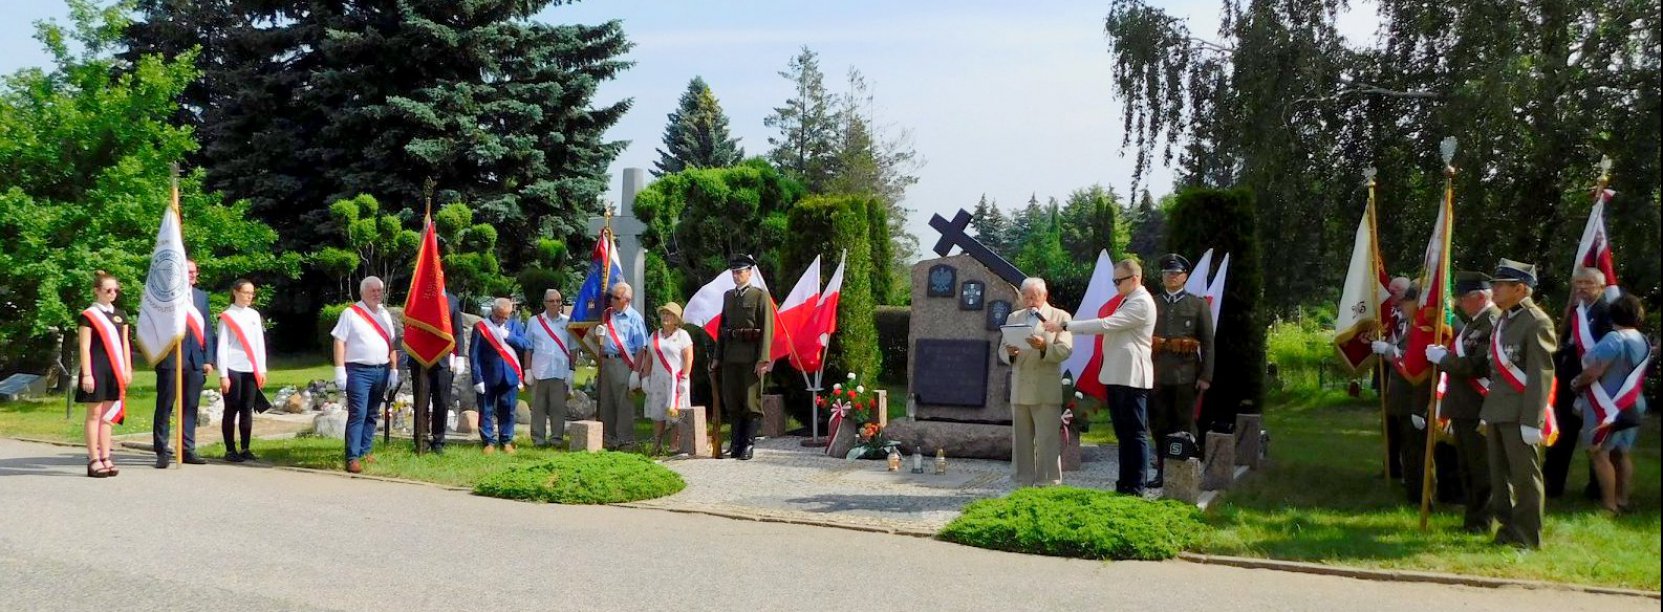 Cmentarny obelisk, ludzie z flagami Polski, żołenierze i kombatanci w mundurach 